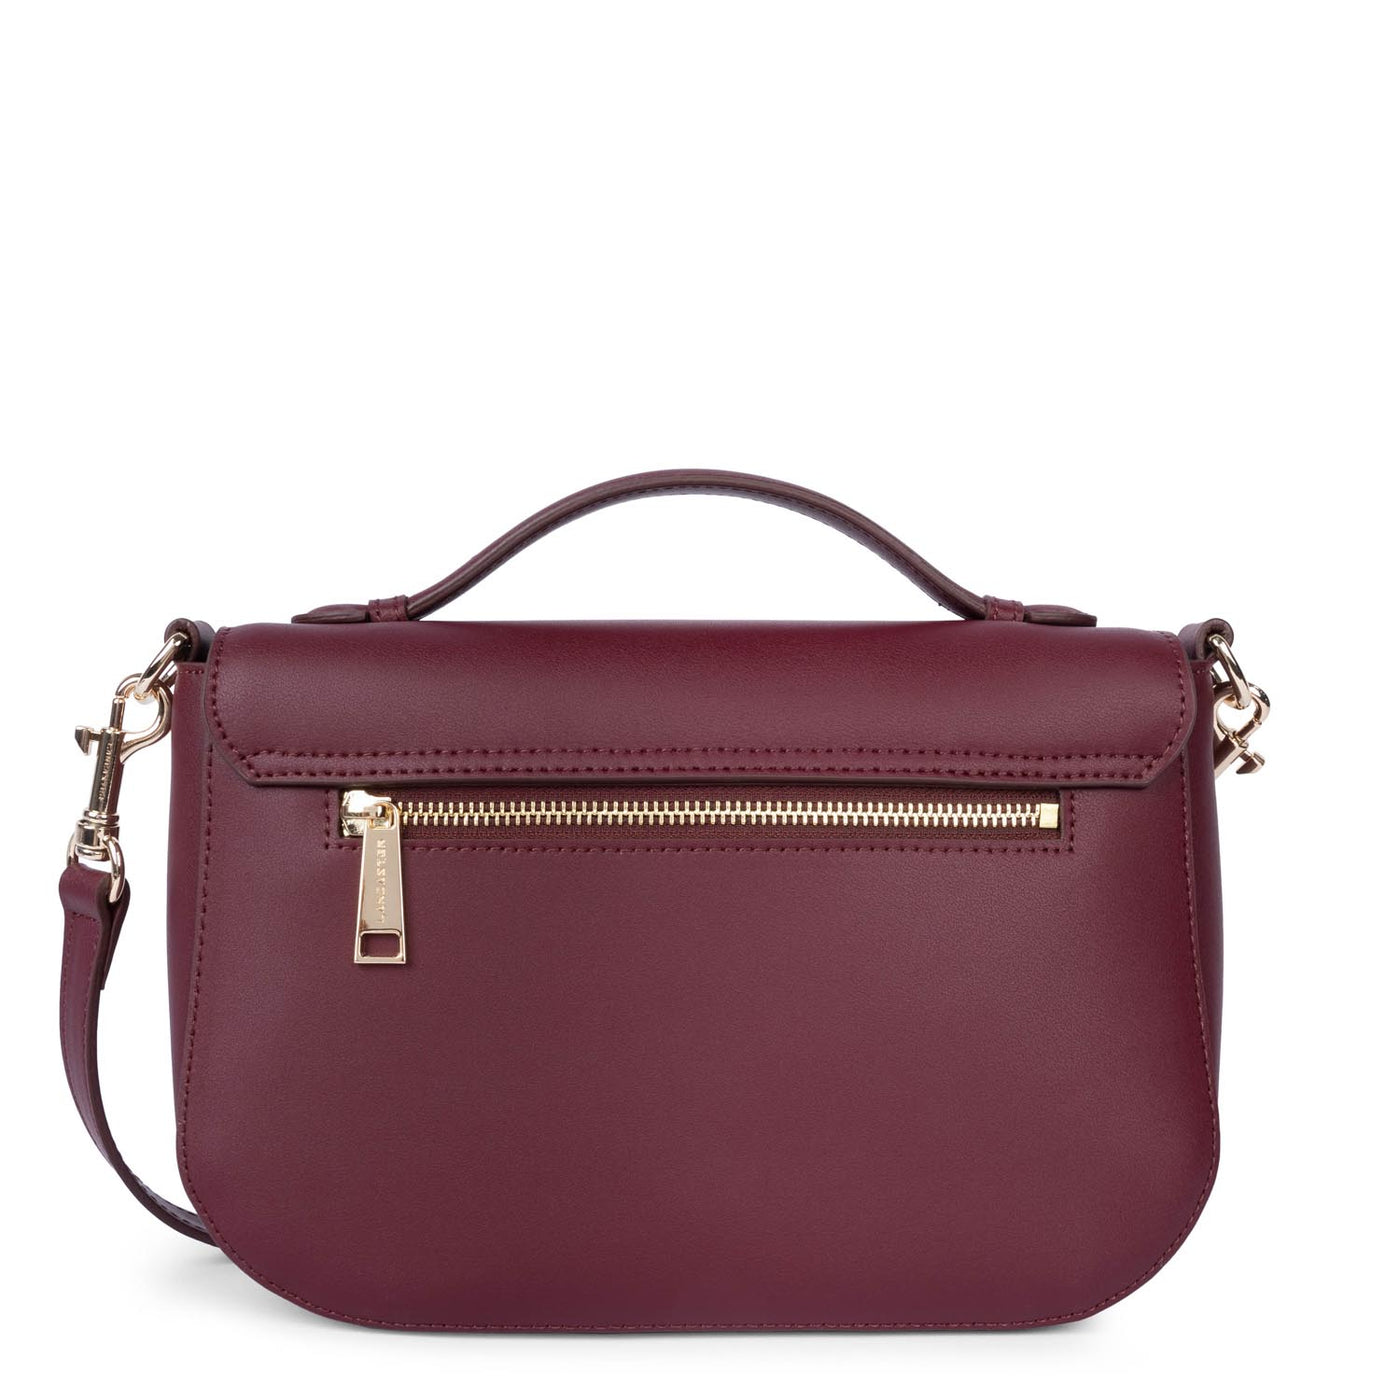 handbag - city philos #couleur_pourpre